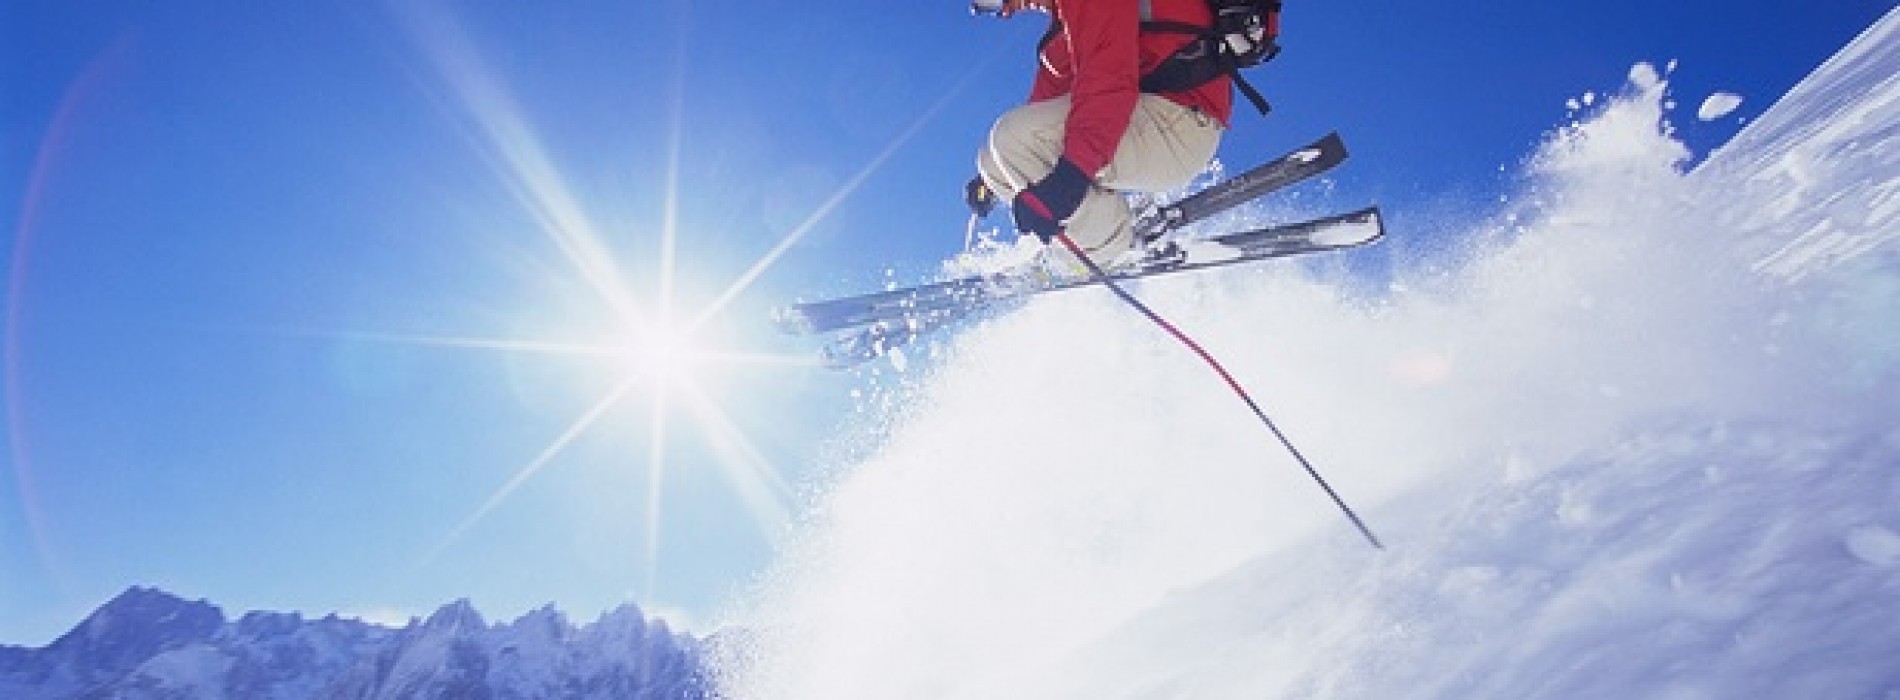 Co obejmuje dodatkowa ochrona narciarzy?